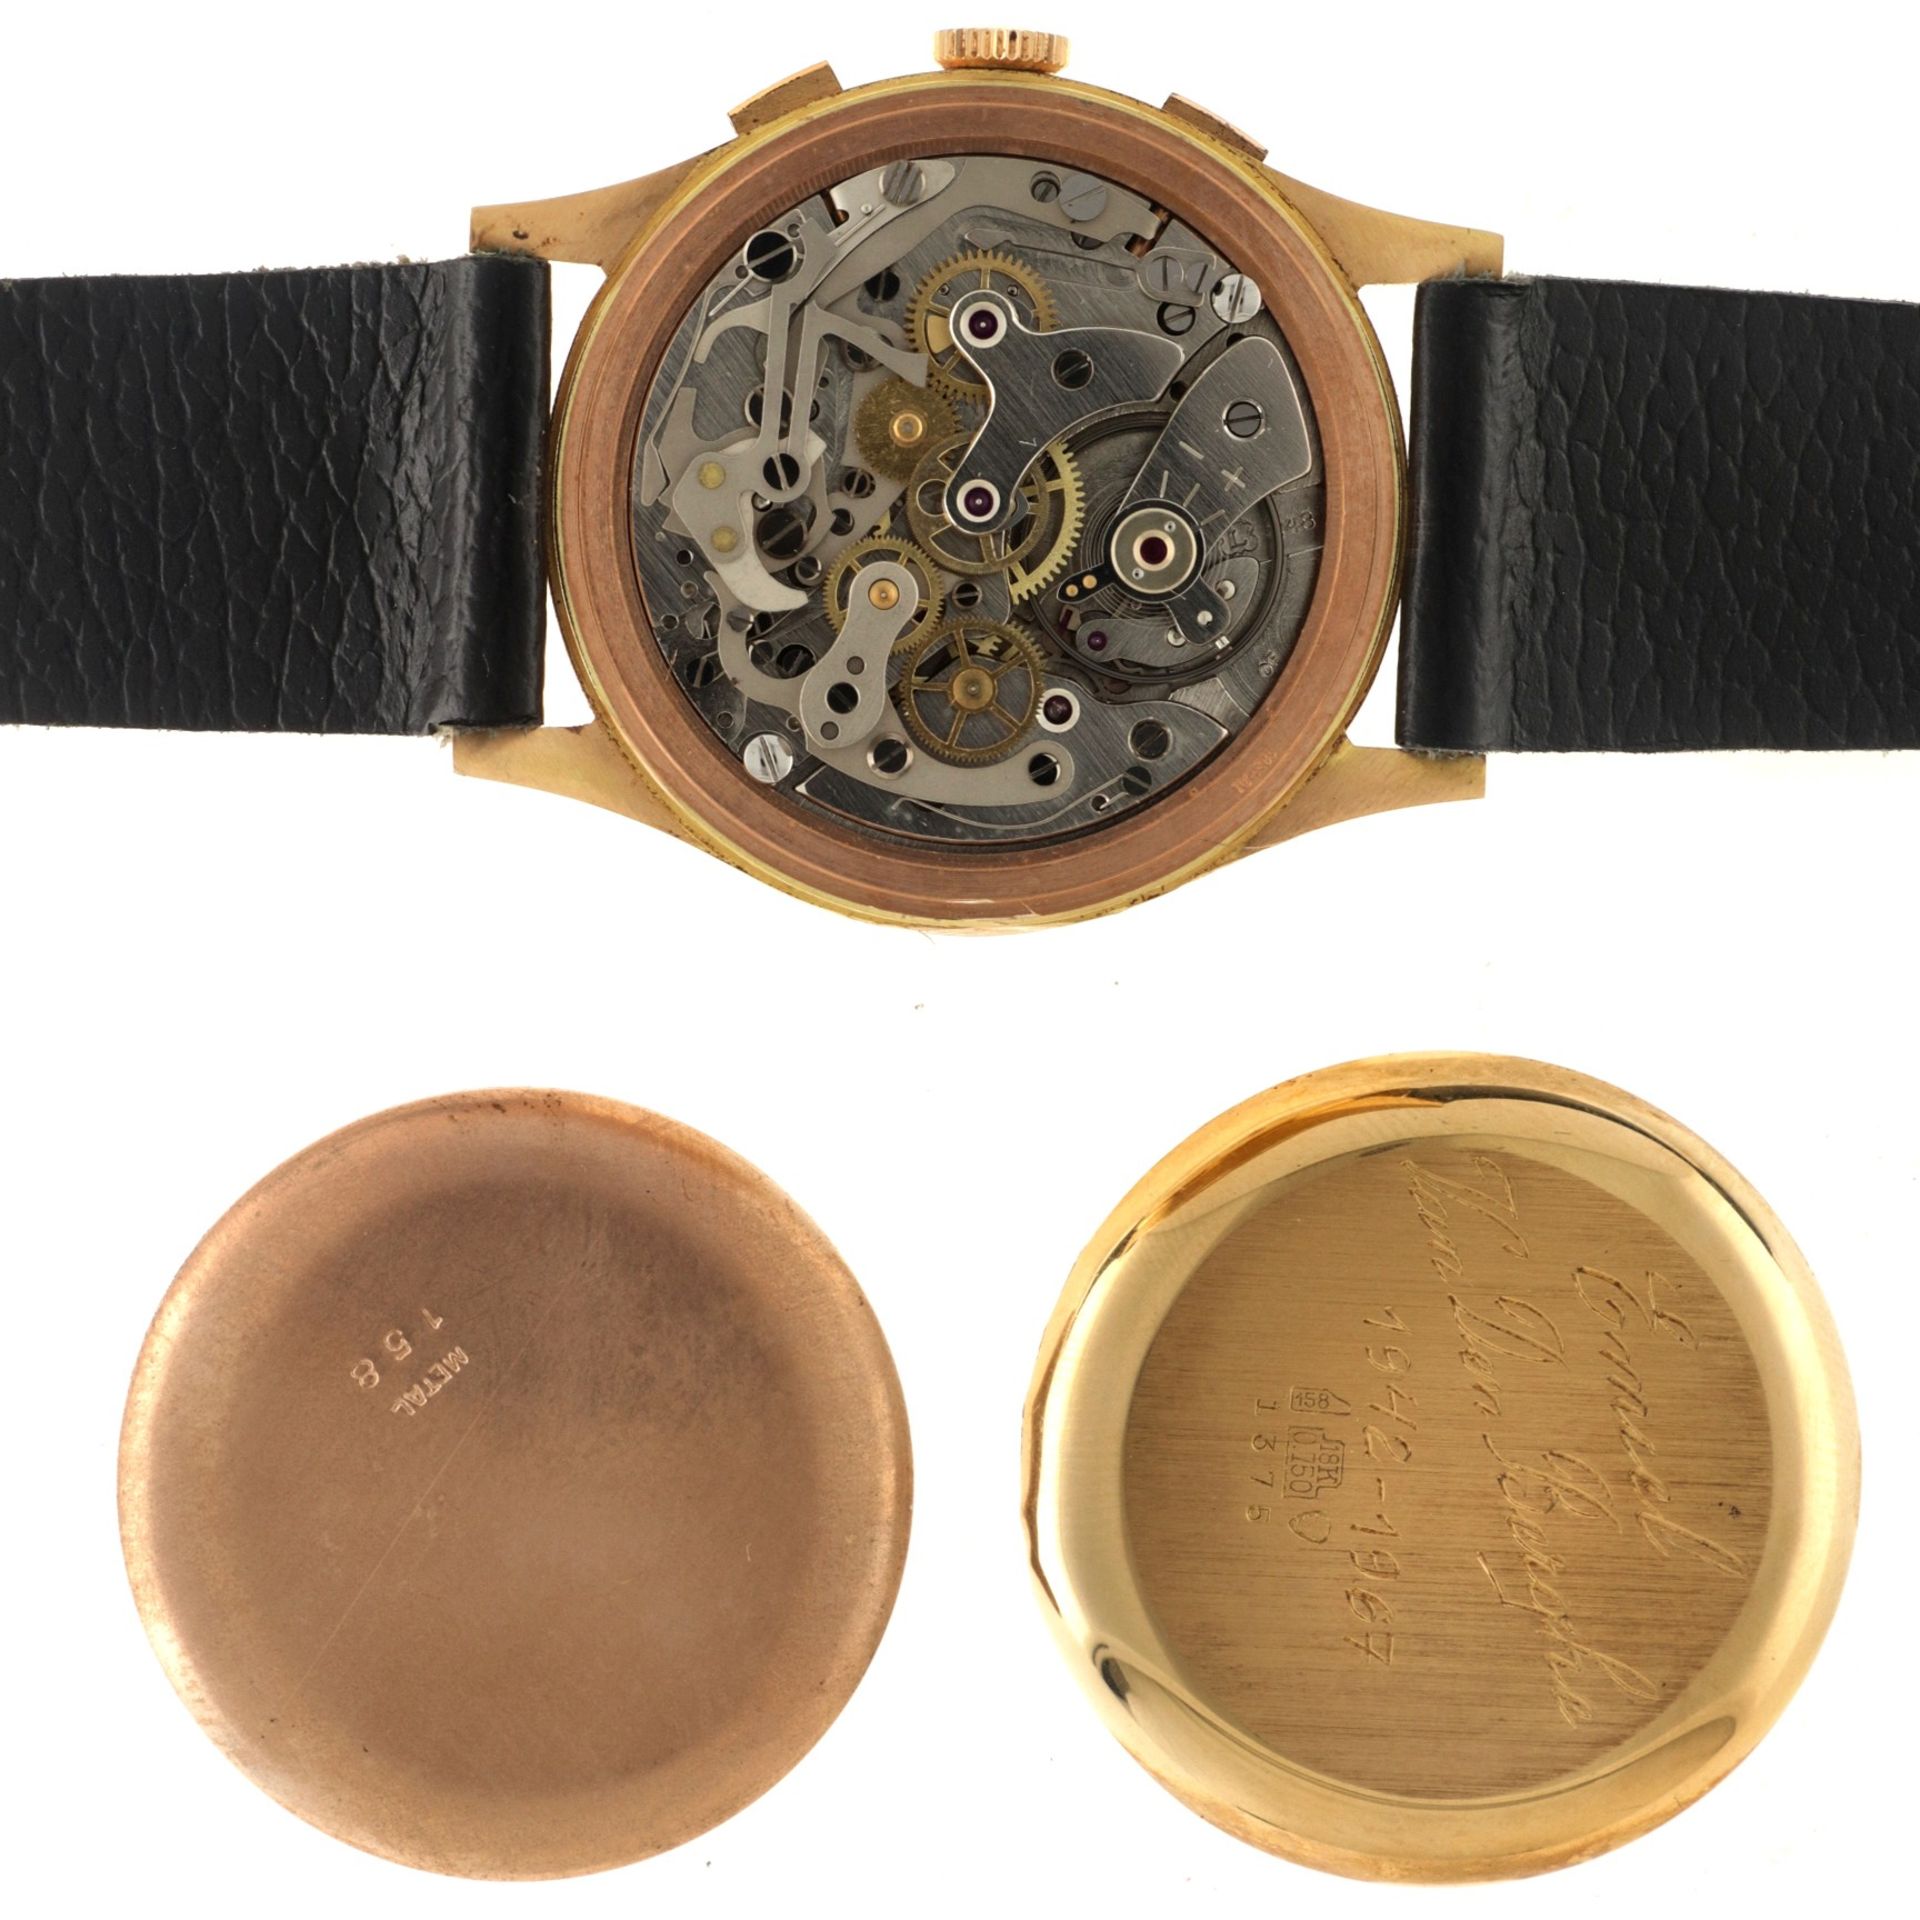 No Reserve - Gigandet Vintage  Chronograph 18K. - Men's watch.  - Image 6 of 6